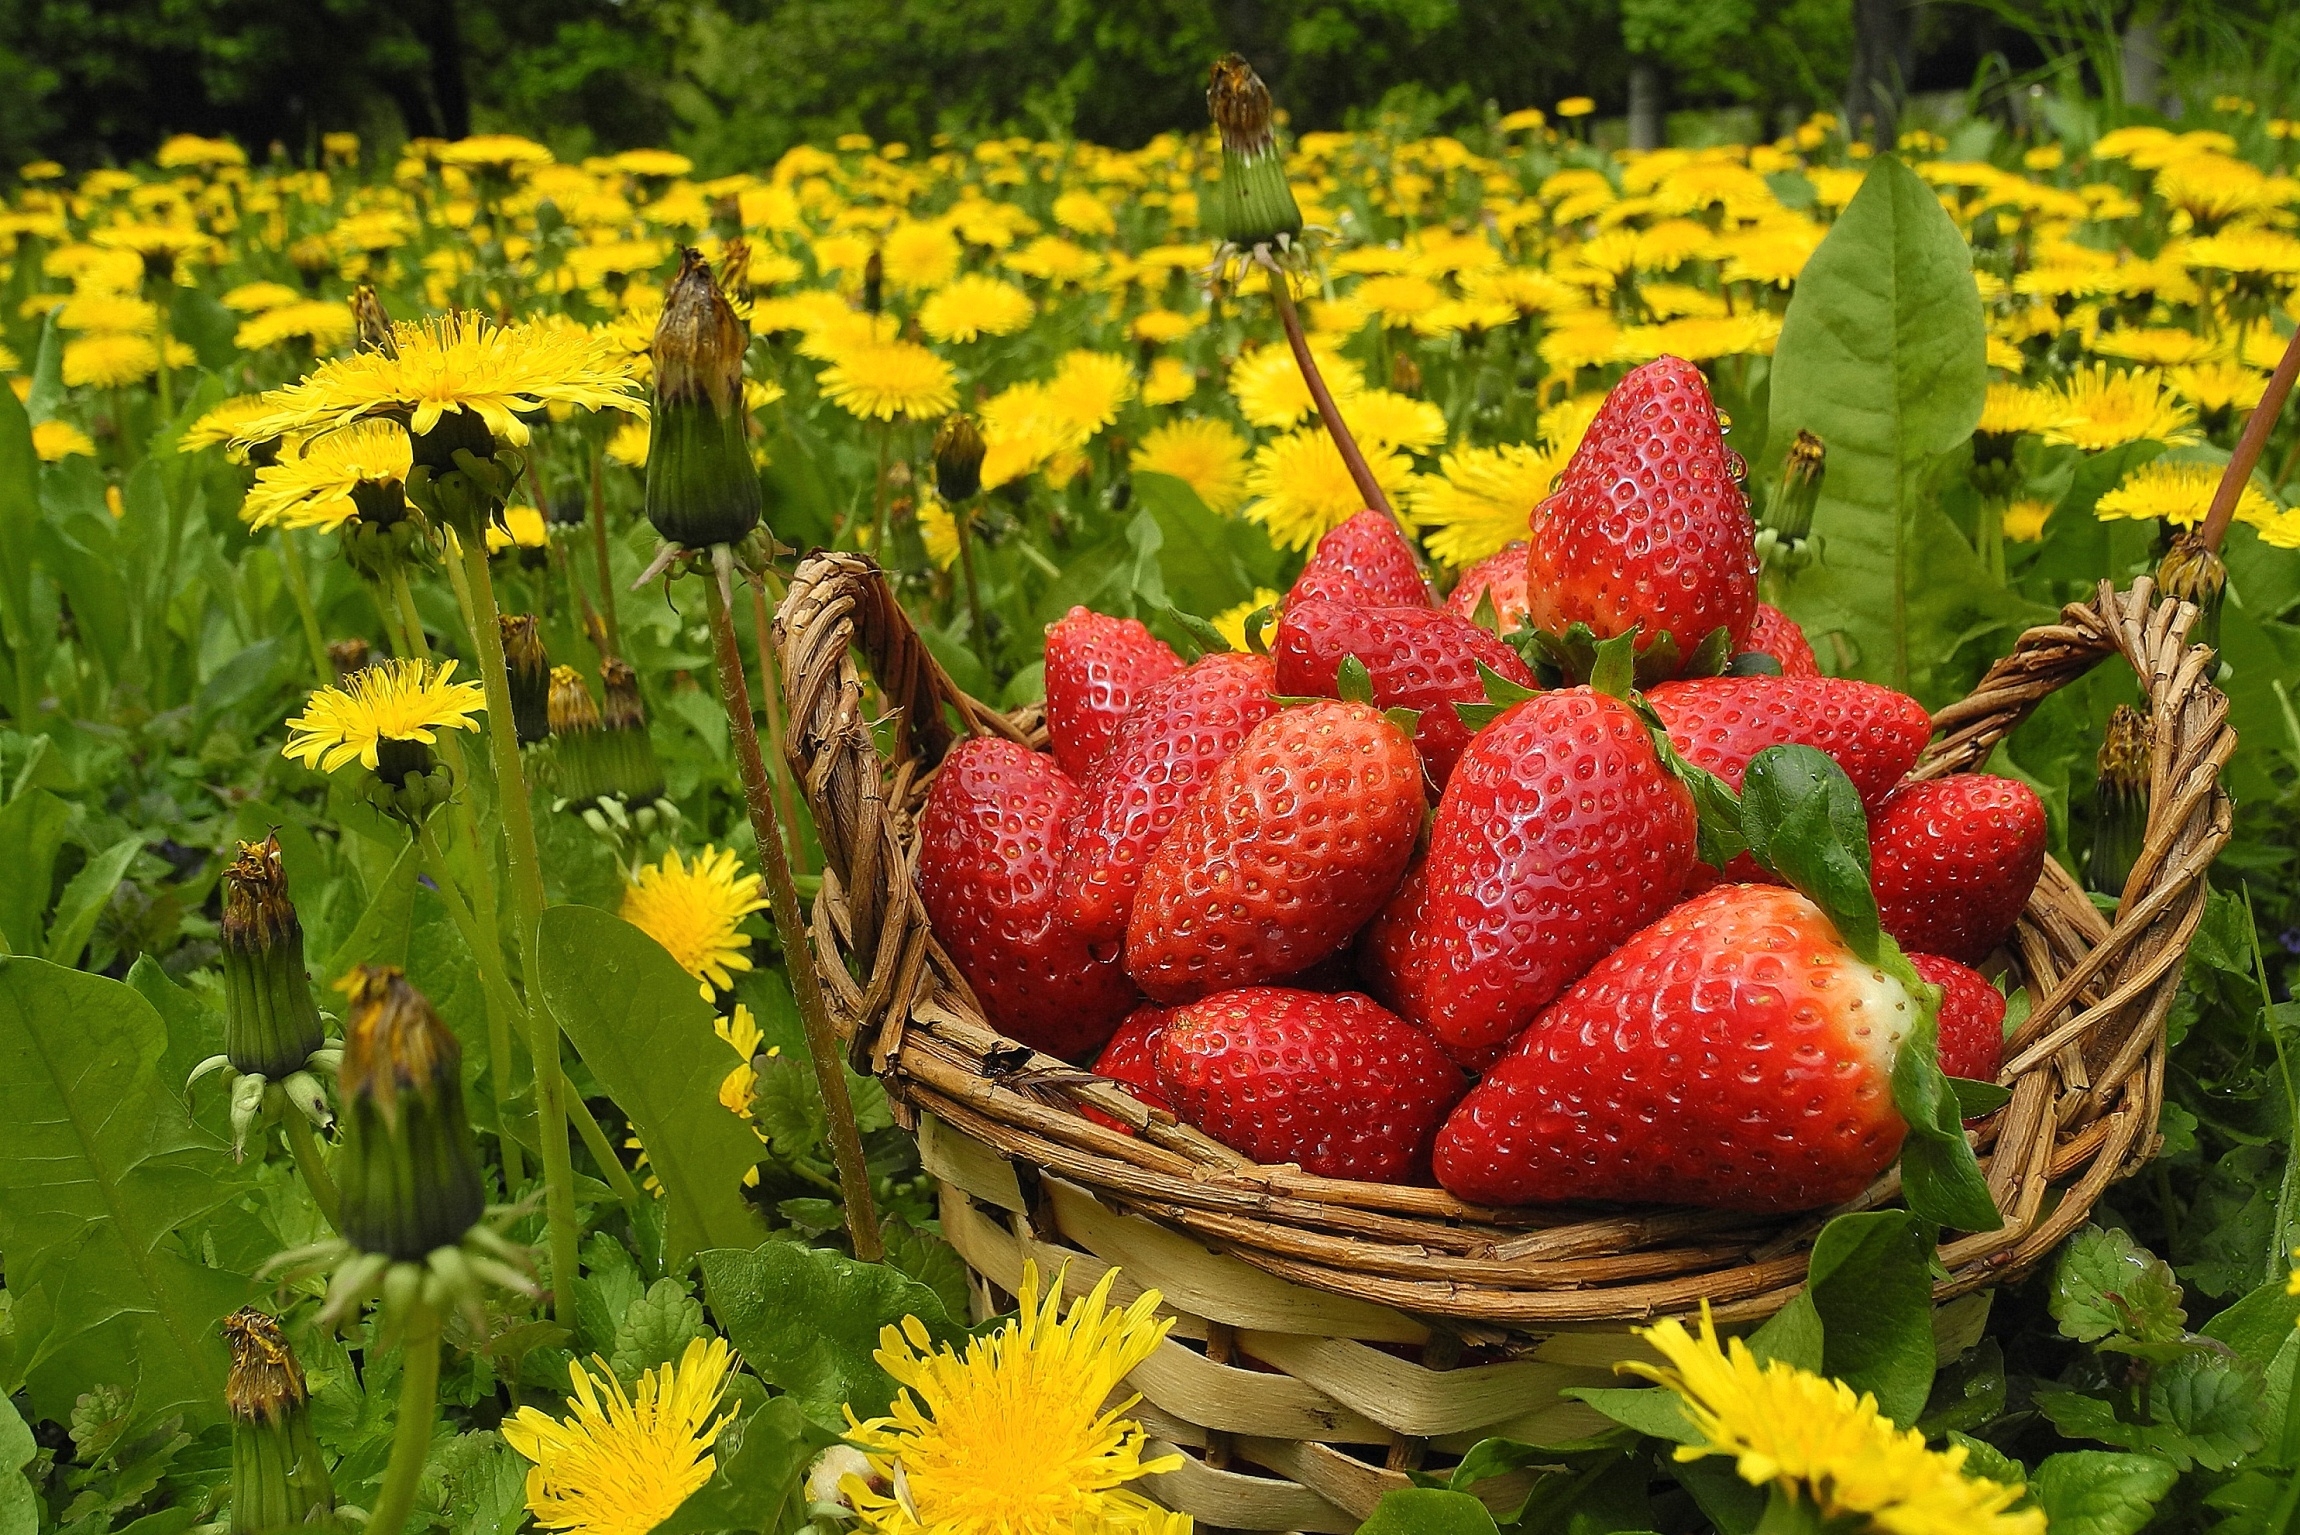 flowers, food, strawberry, dandelions, berries, basket, meadow